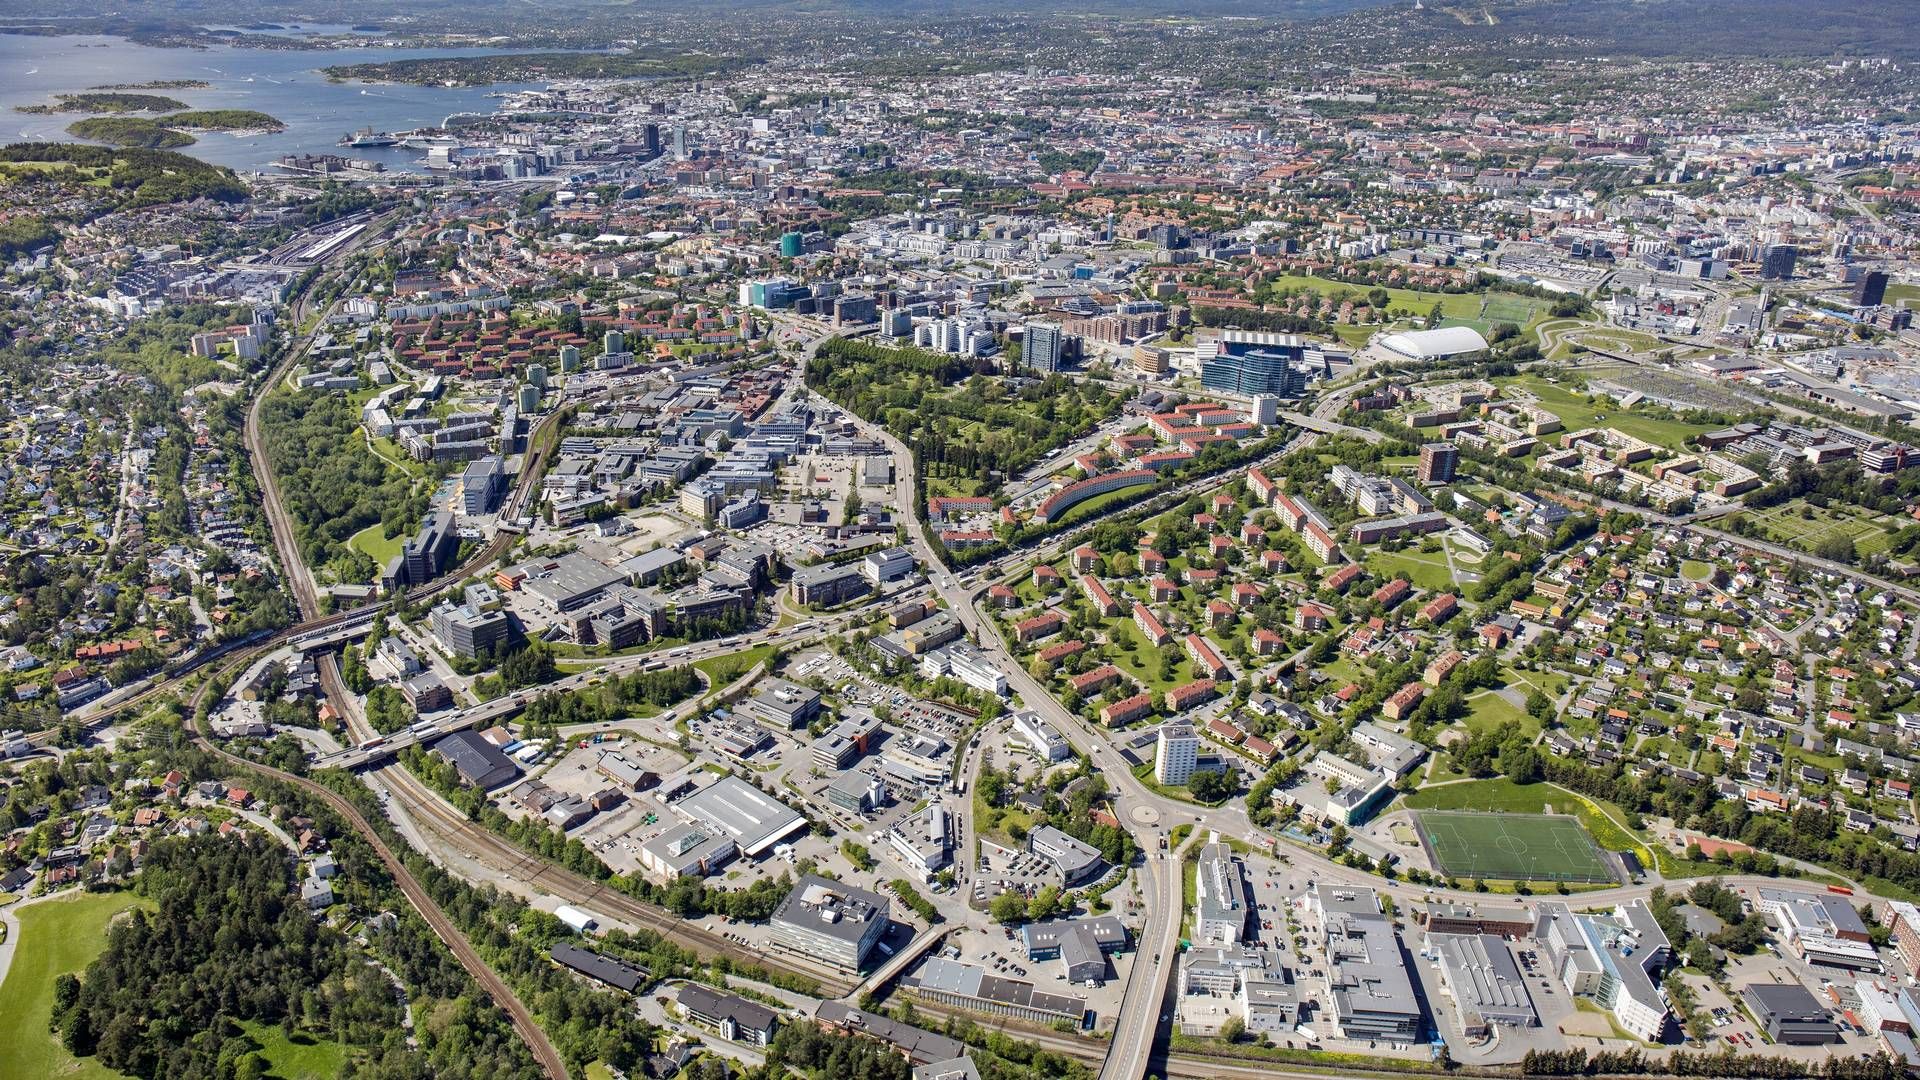 UTVIKLES: Byutviklingen fortsetter på Bryn og Helsfyr rett øst for Oslo sentrum | Foto: nyebilder.no